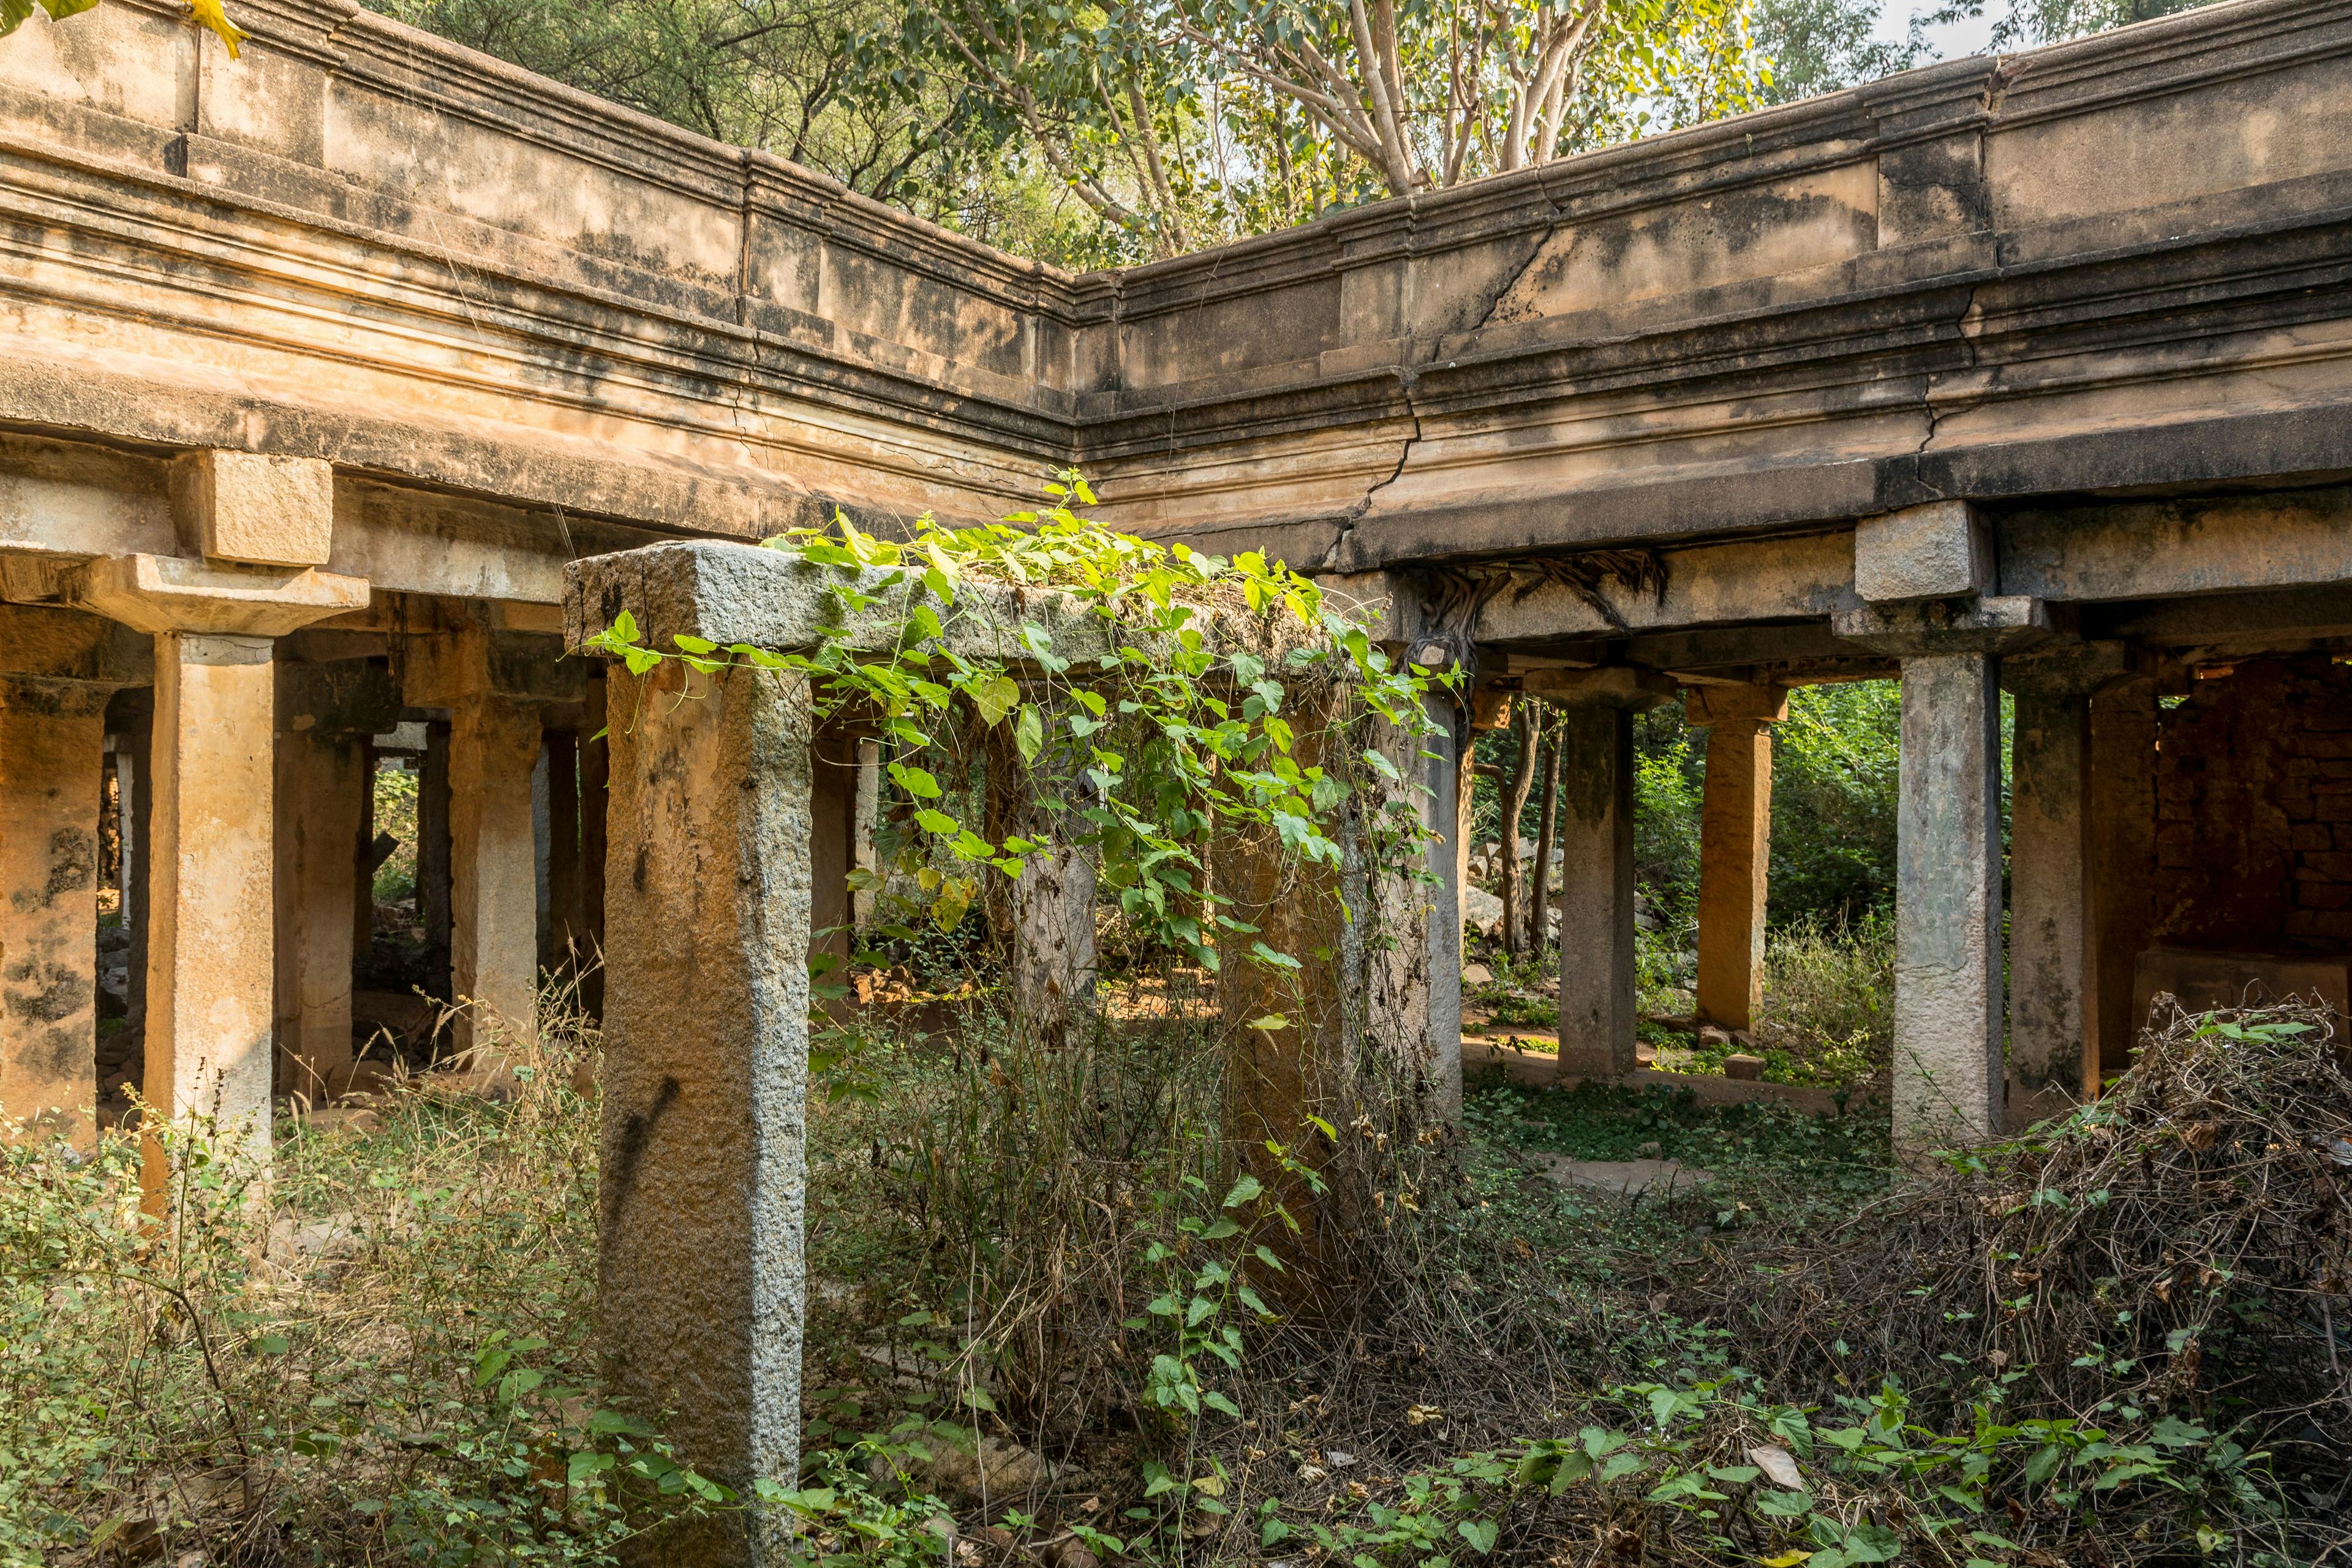 Pillars at Chikkajala fort